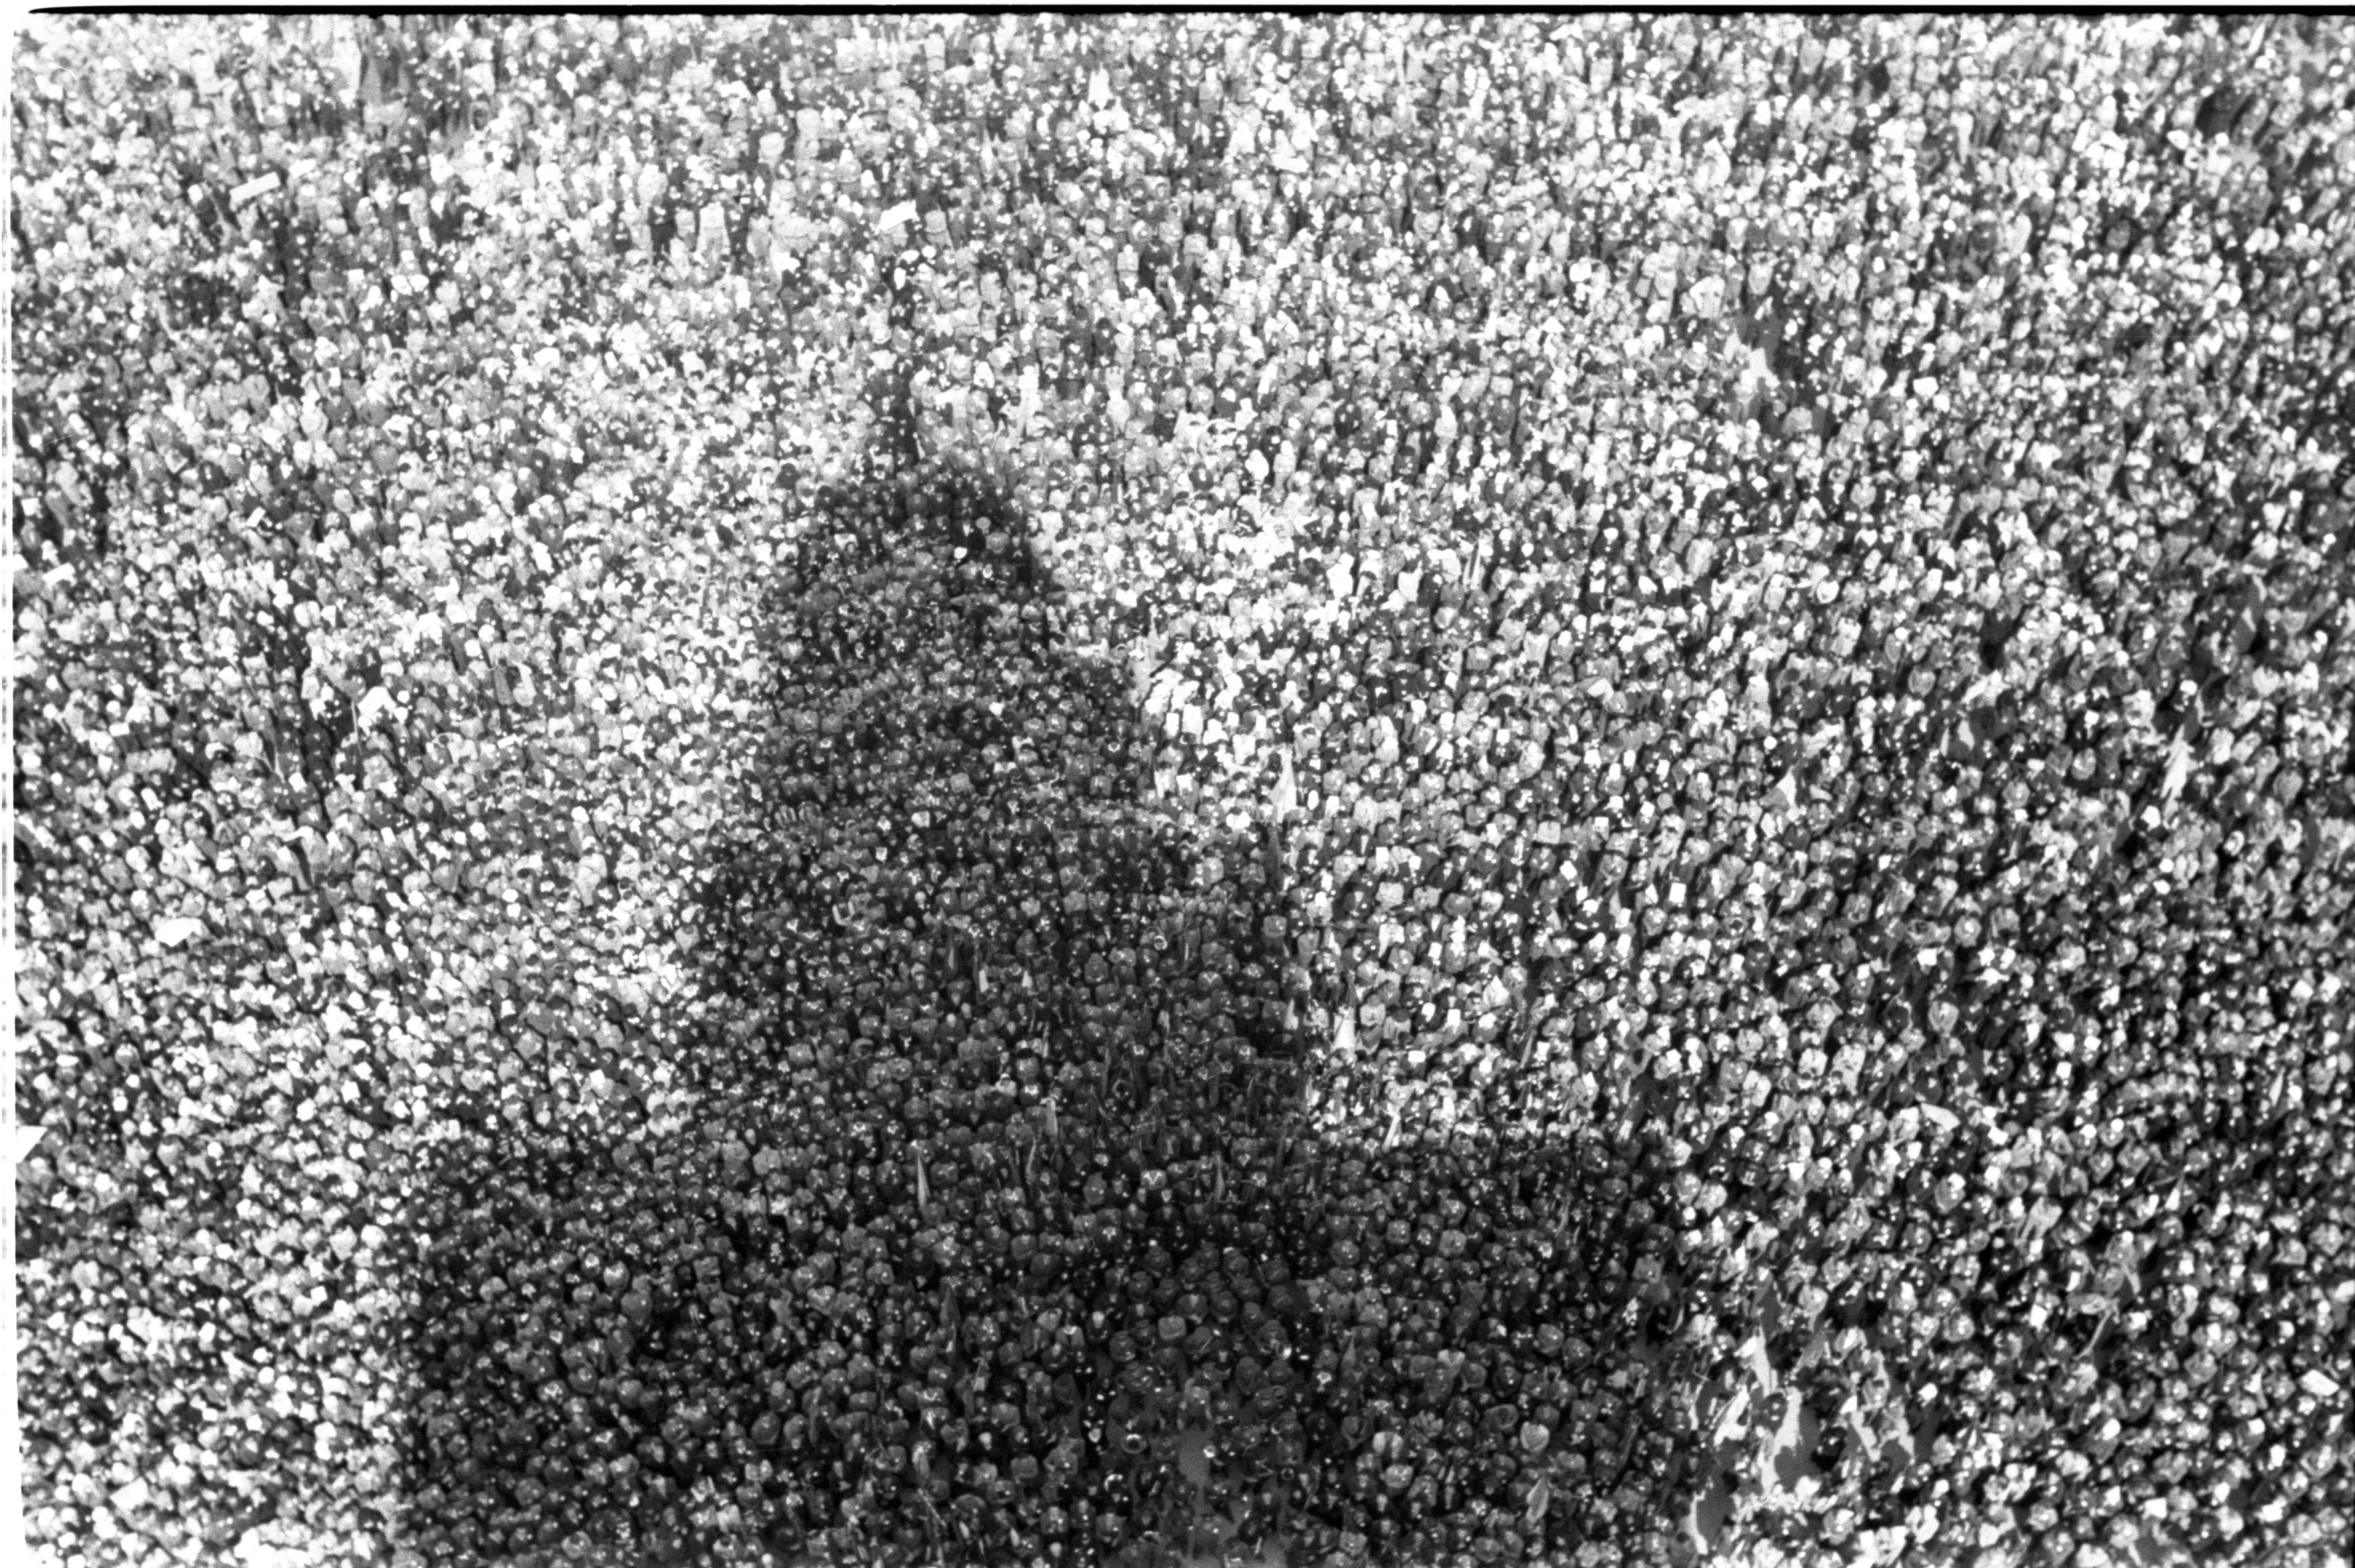 Federico Patellani, Milano, 16 maggio 1946. La folla in piazza Castello durante il comizio di Achille Grandi Milano, 1946